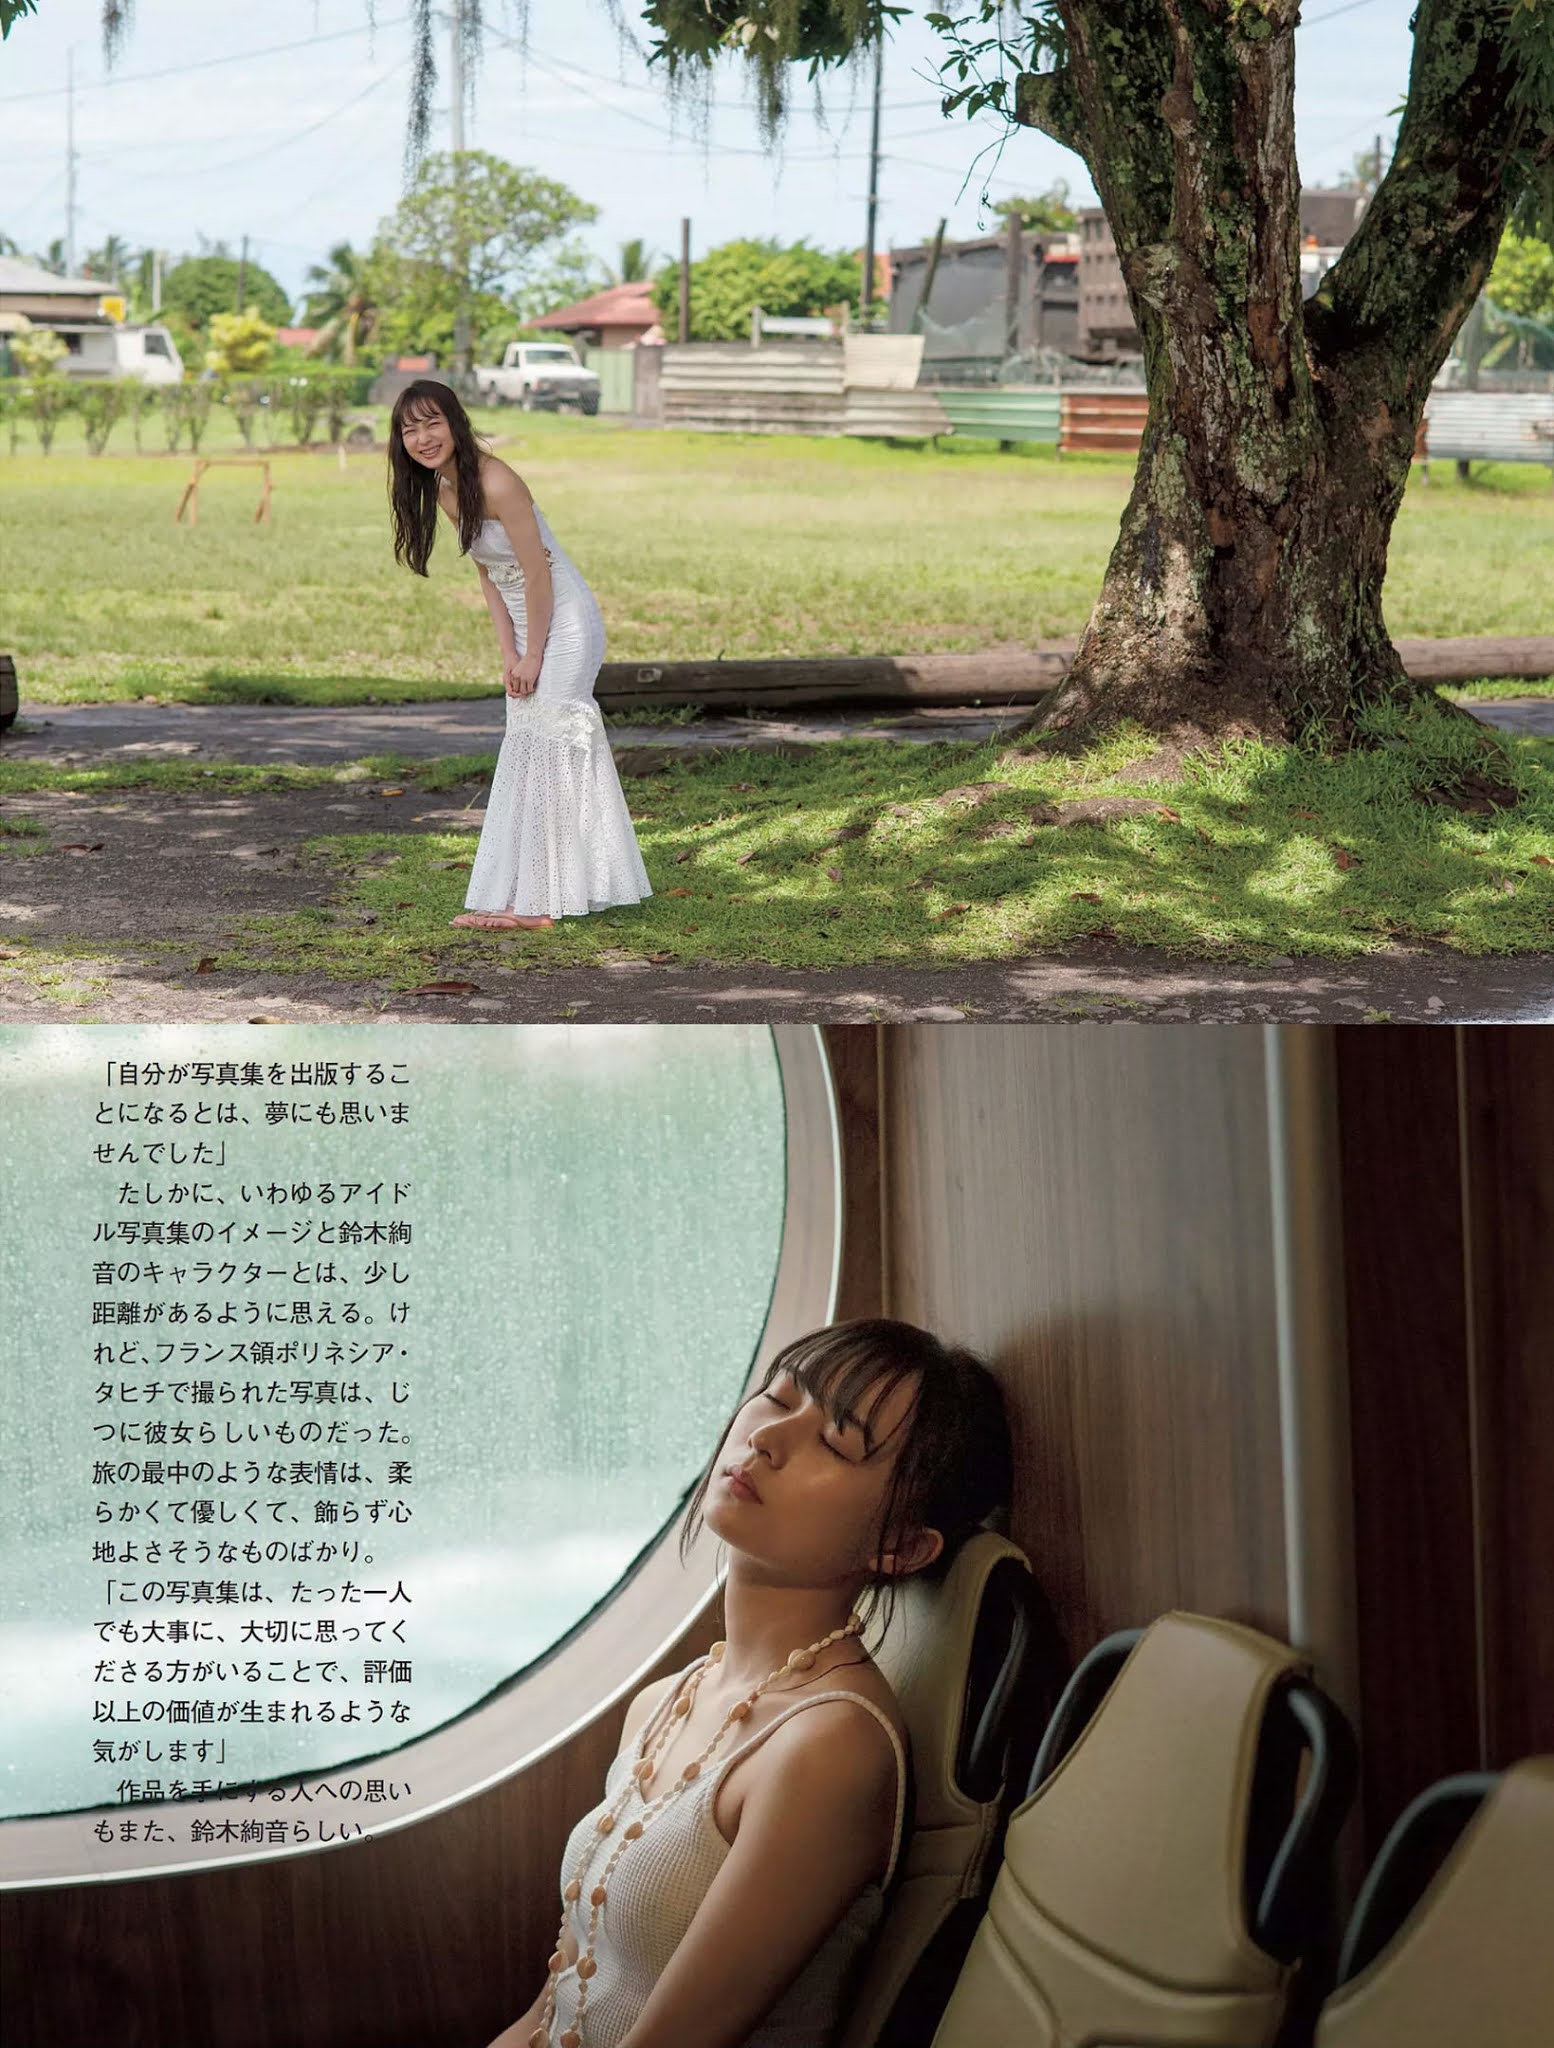 Ayane Suzuki 鈴木絢音, FLASH 2020.11.24 (フラッシュ 2020年11月24日号)